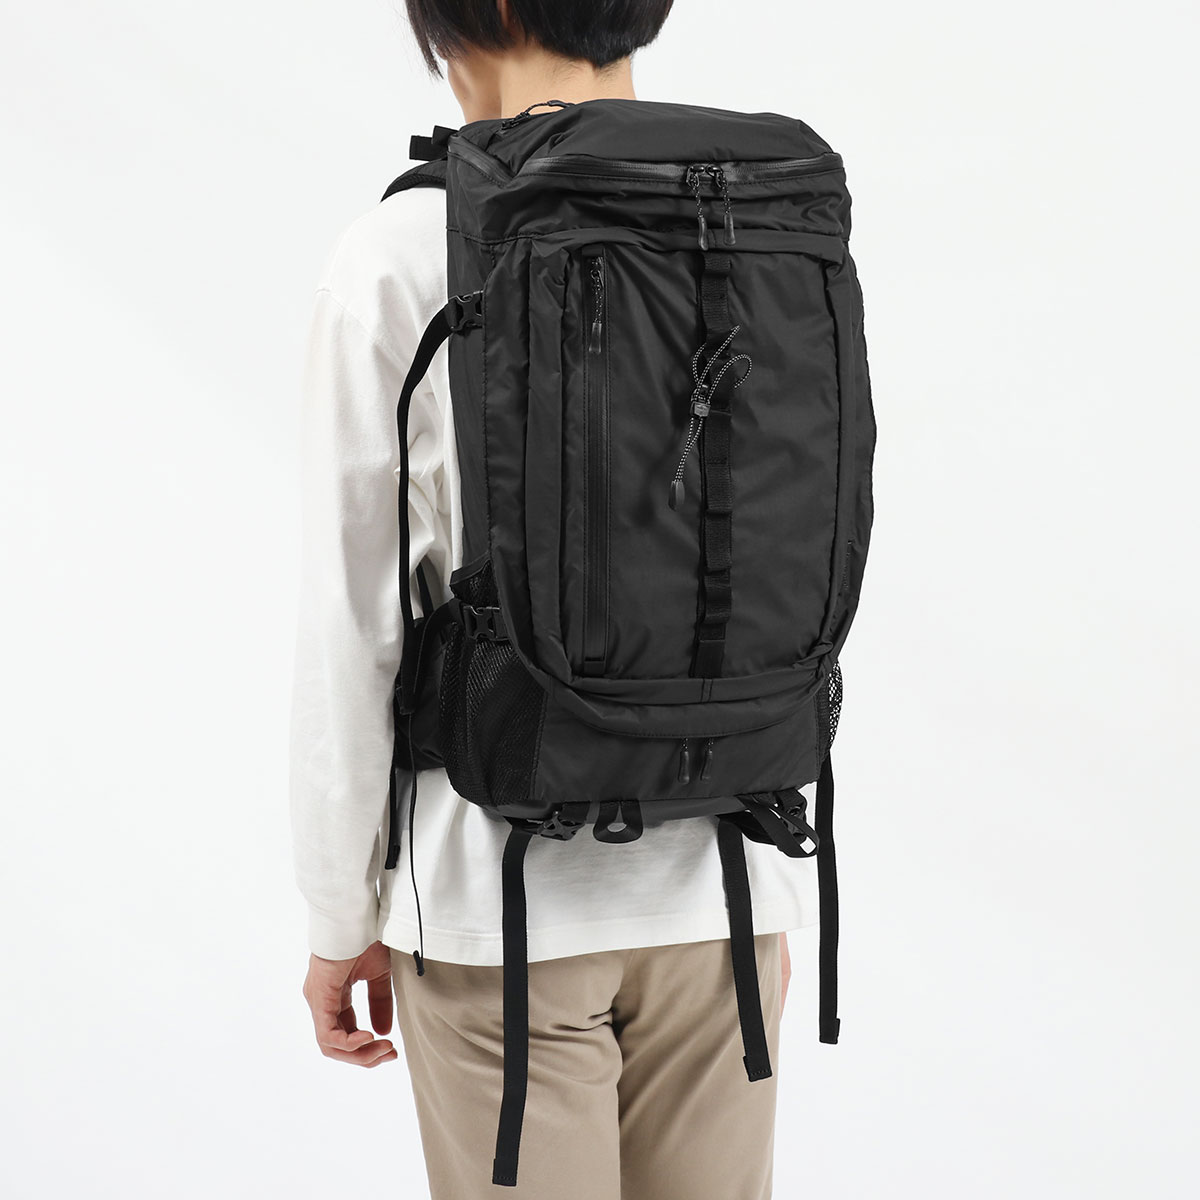 【Aeta】backpack M